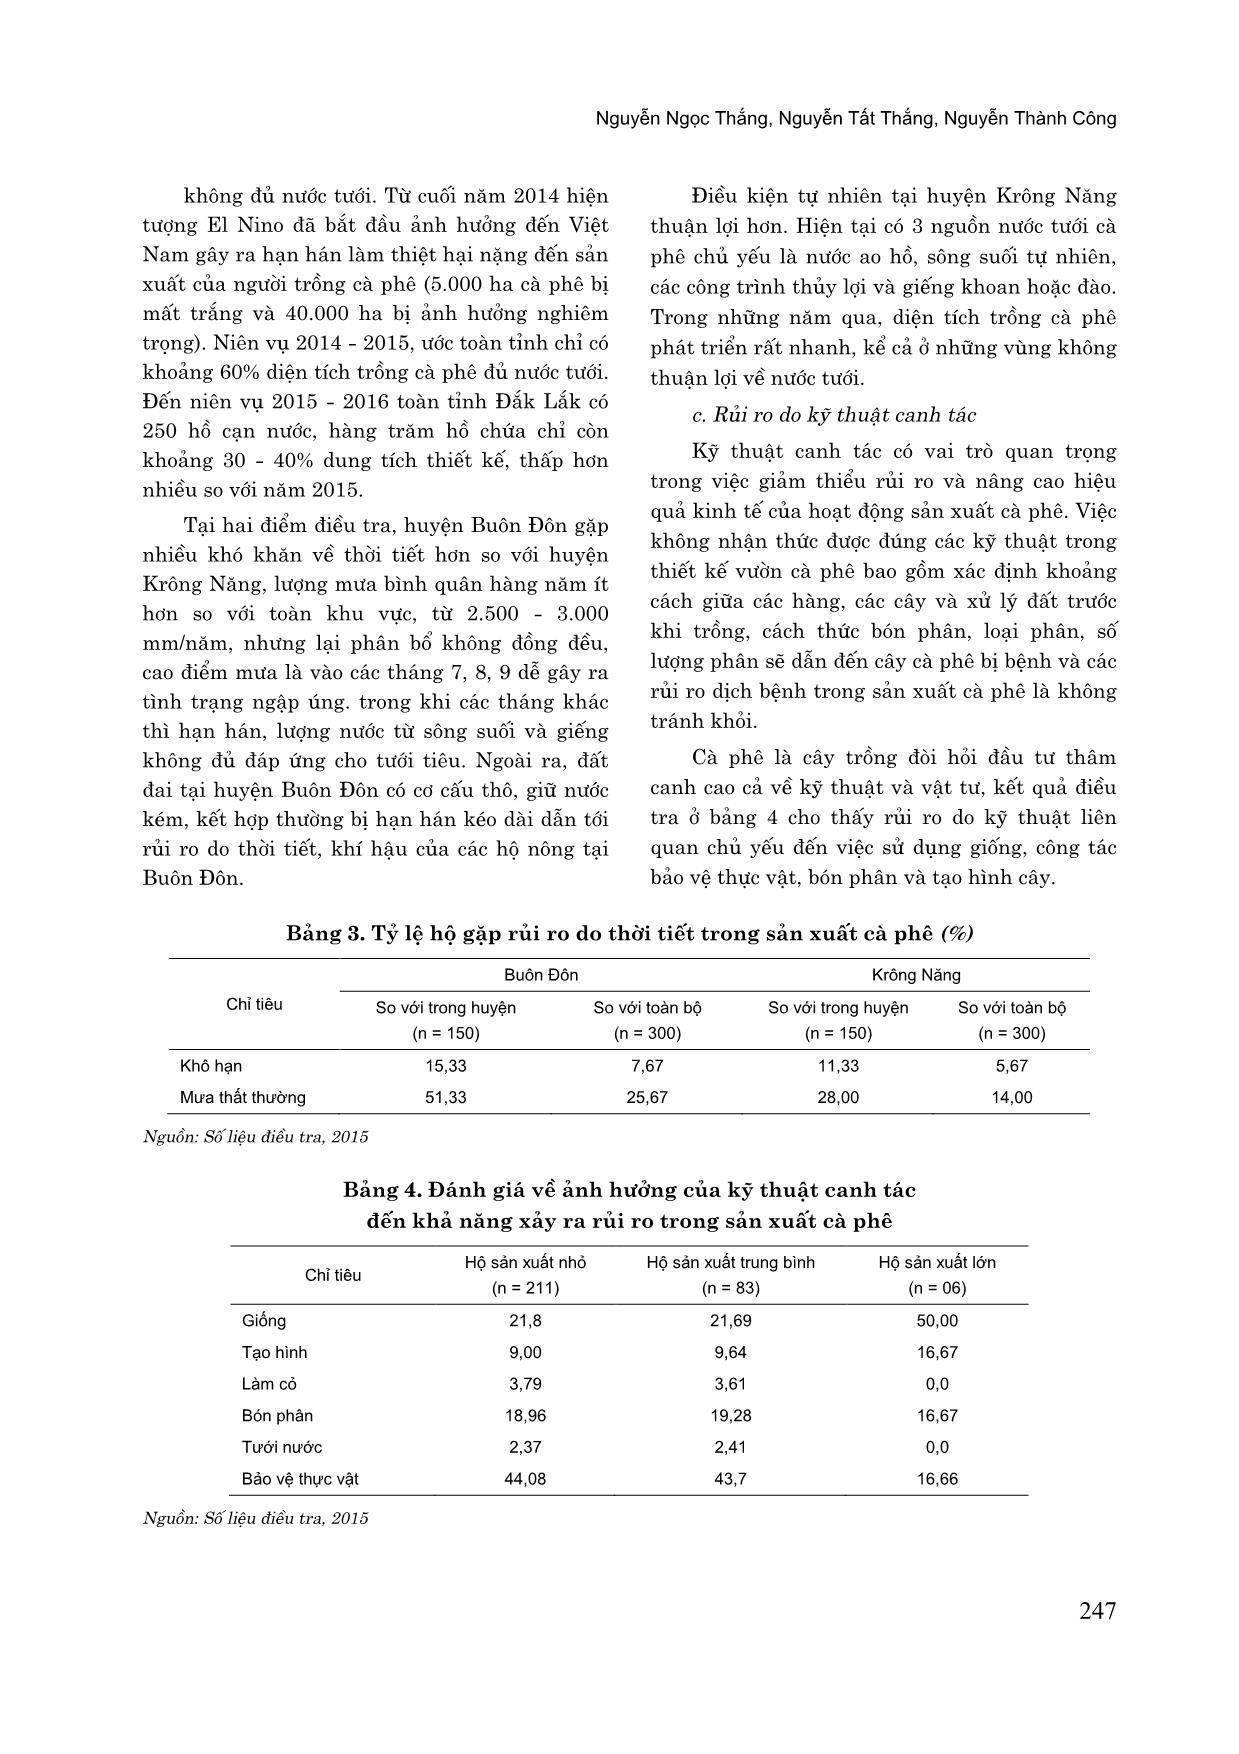 Phân tích rủi ro trong sản xuất cà phê của các hộ nông dân trên địa bàn tỉnh Đắk Lắk trang 5